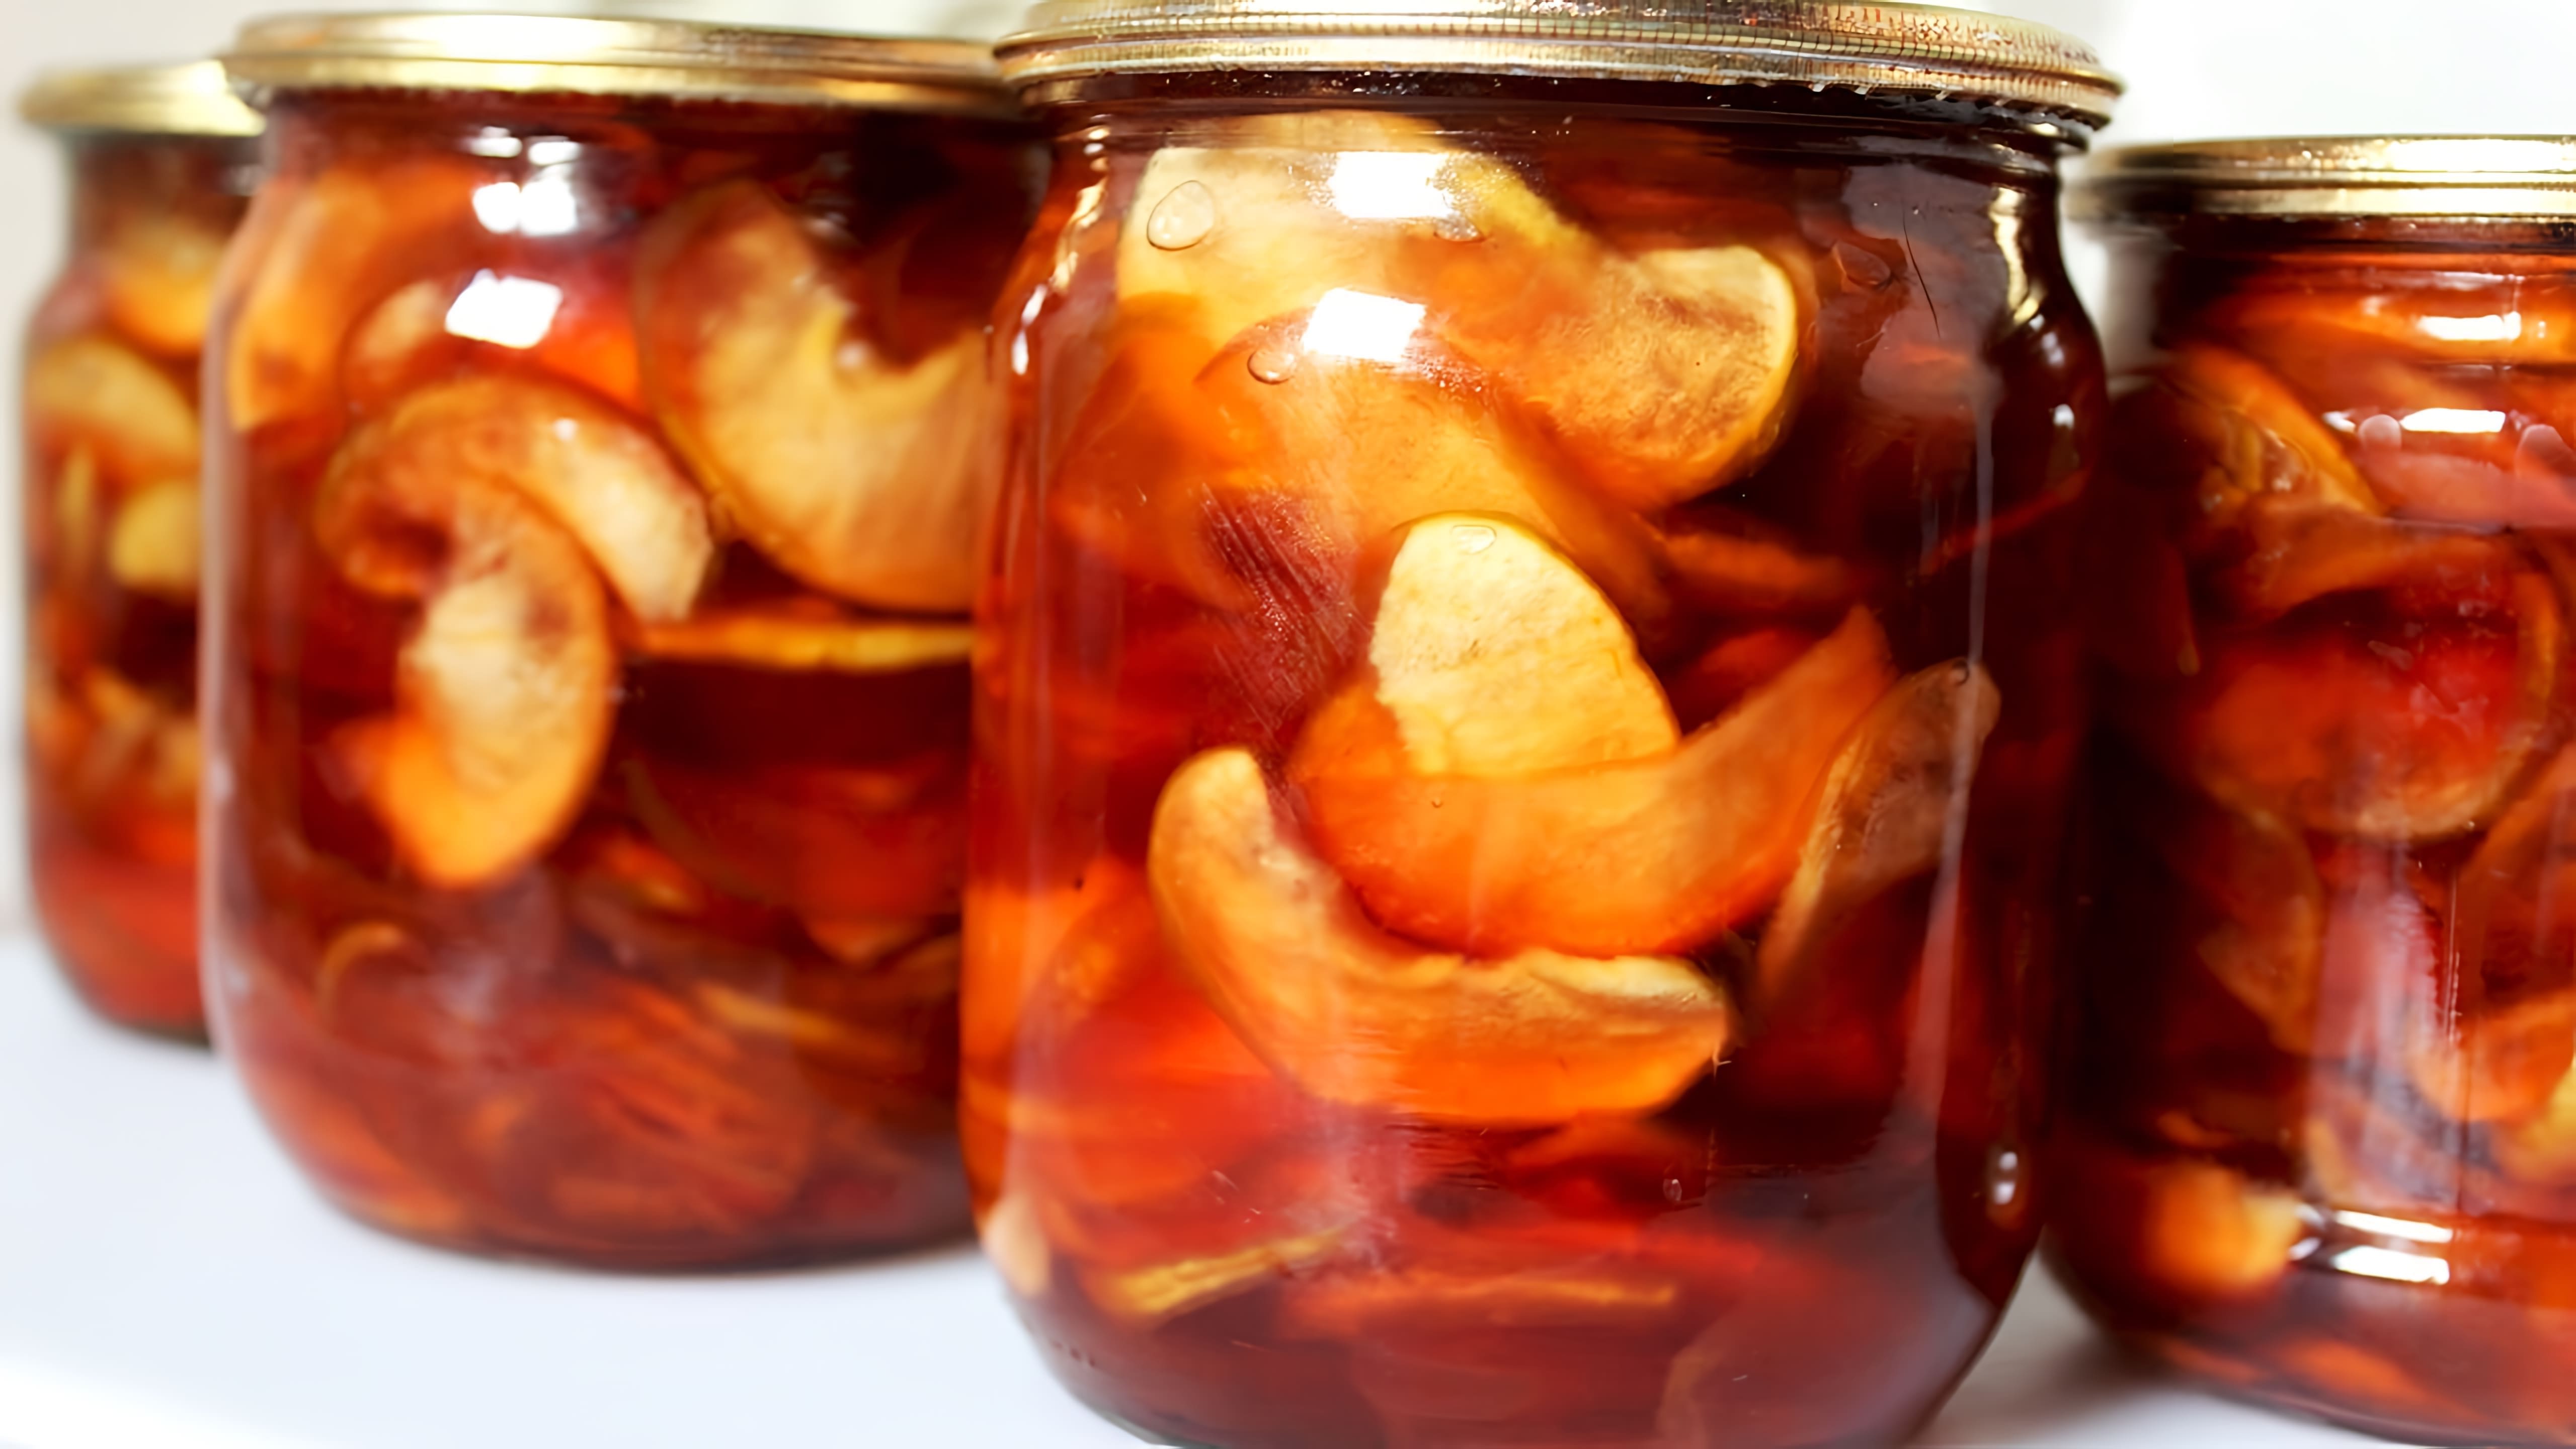 Видео как приготовить прозрачные яблочные ломтики, похожие на изюм или мармелад, в качестве консервации на зиму